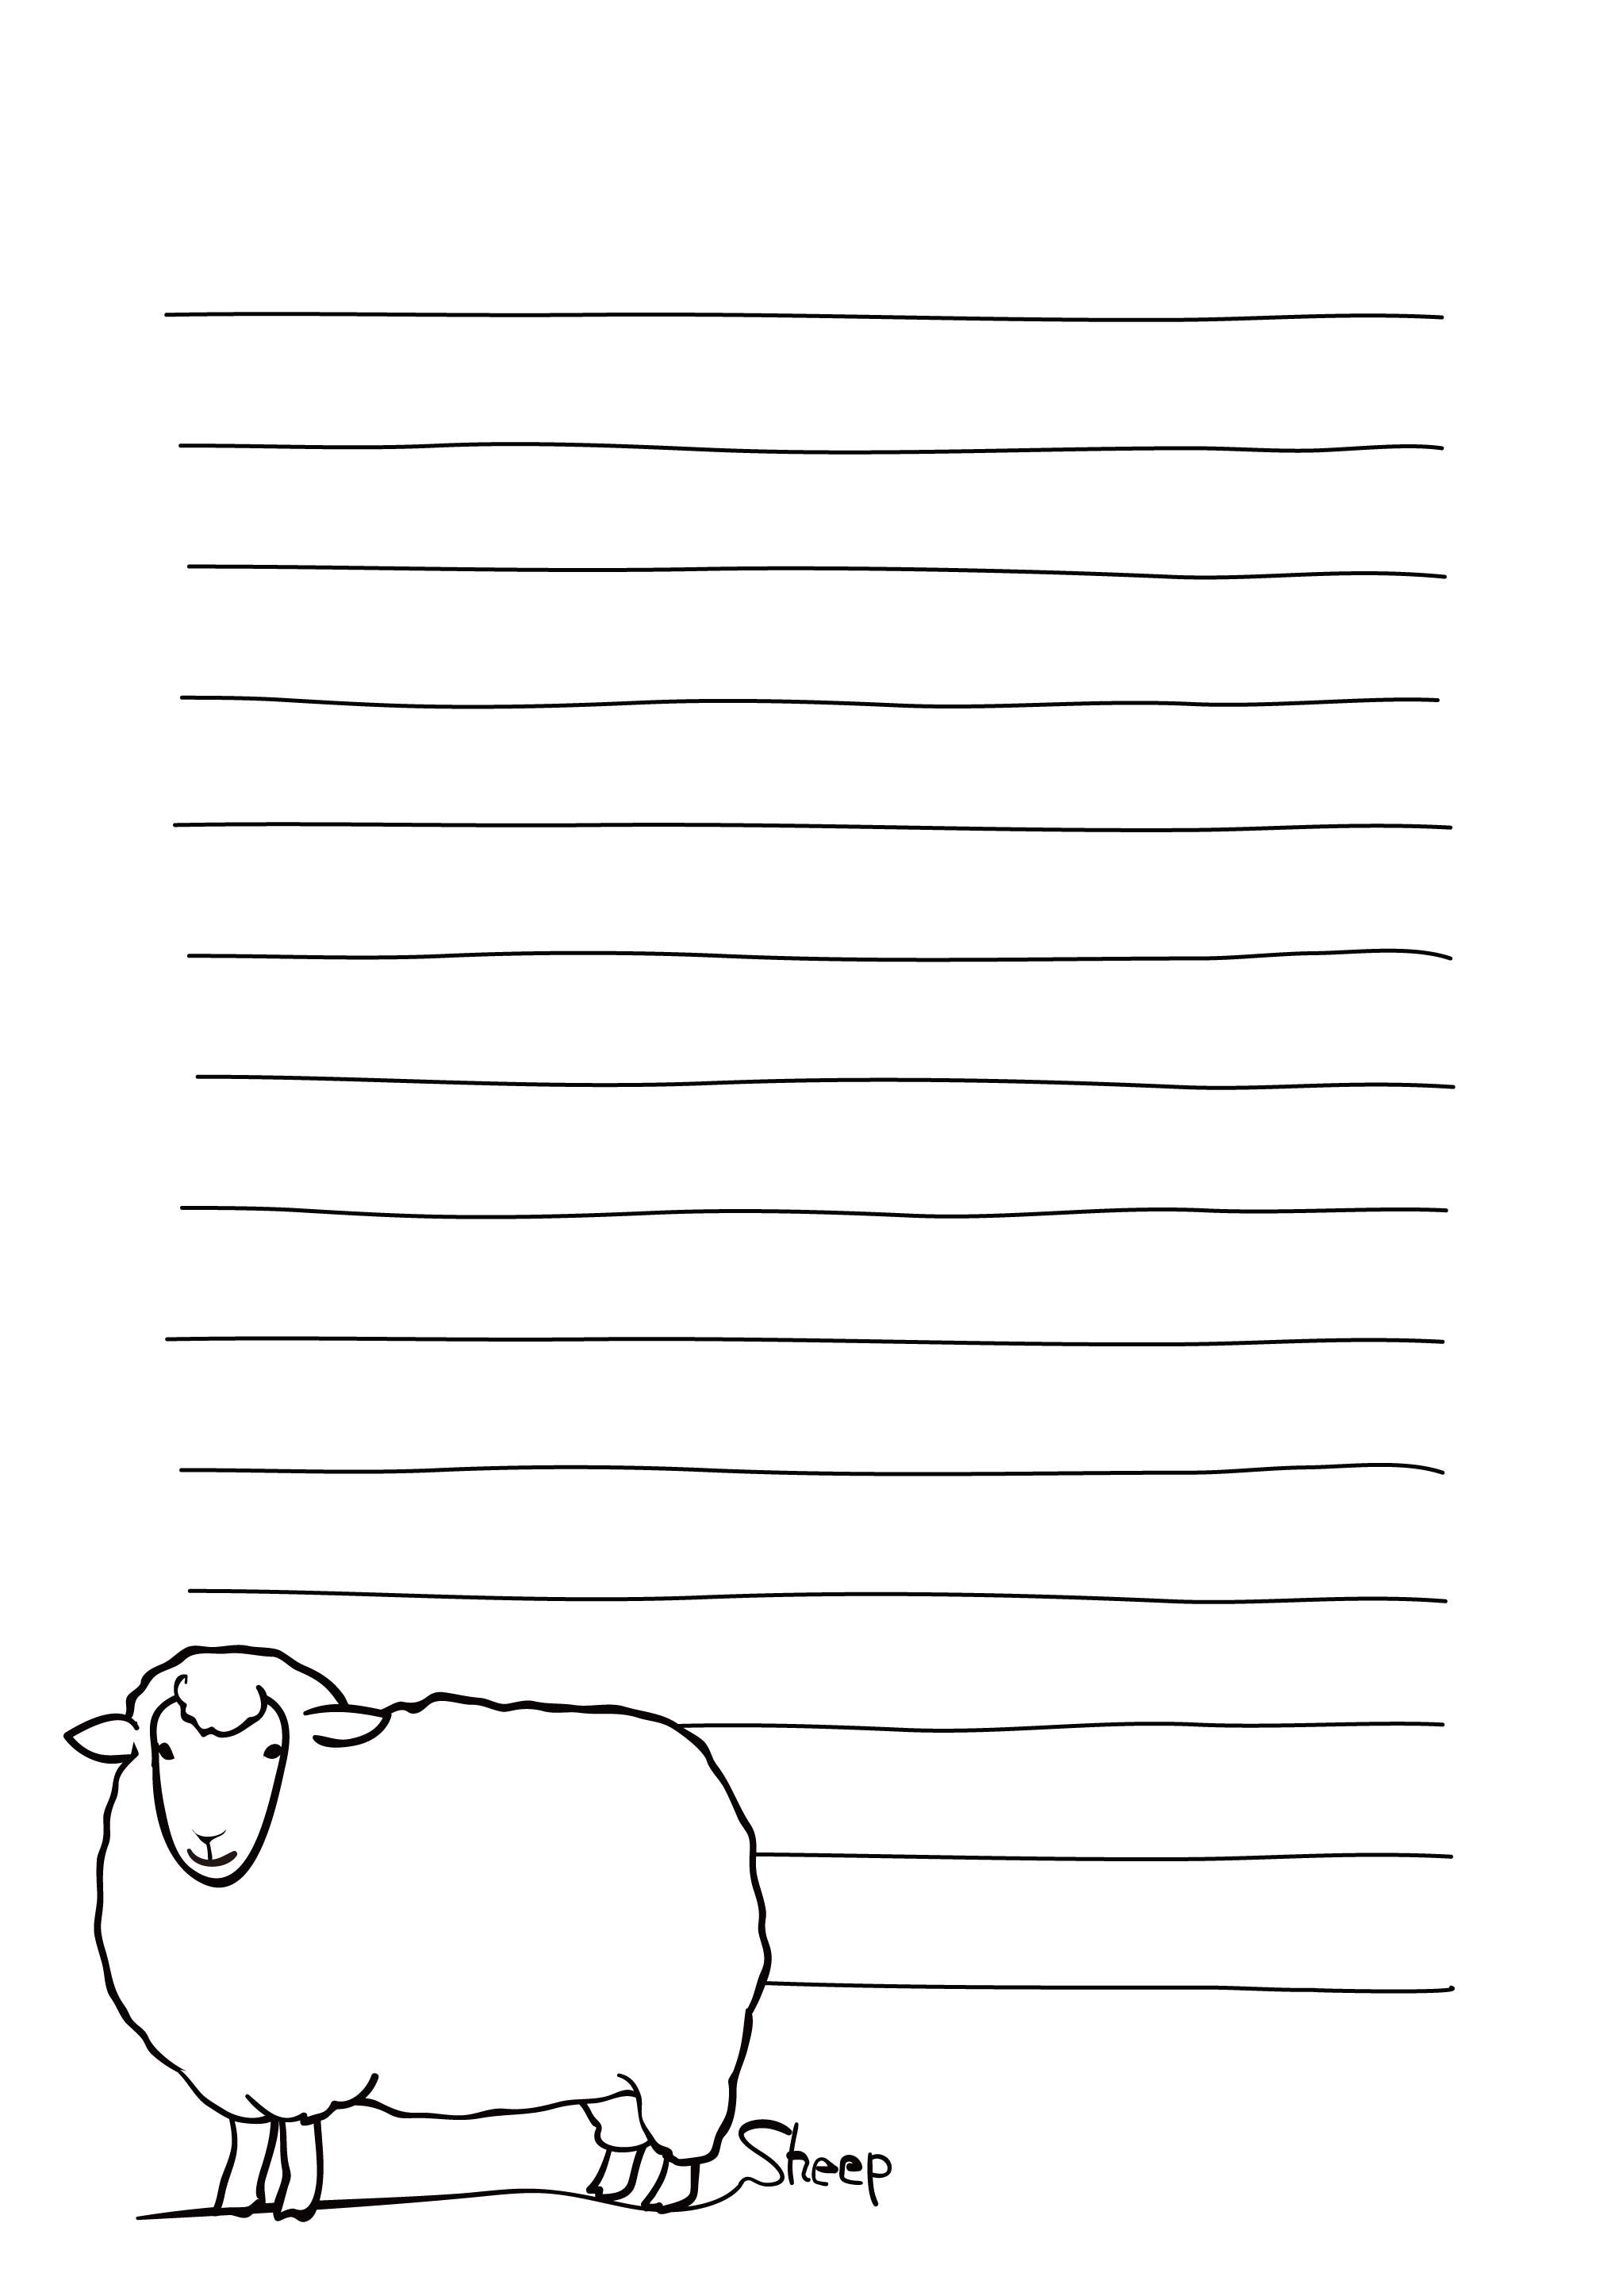 便箋テンプレート シュールな羊 ダウンロード かわいい無料イラスト 印刷素材 Net